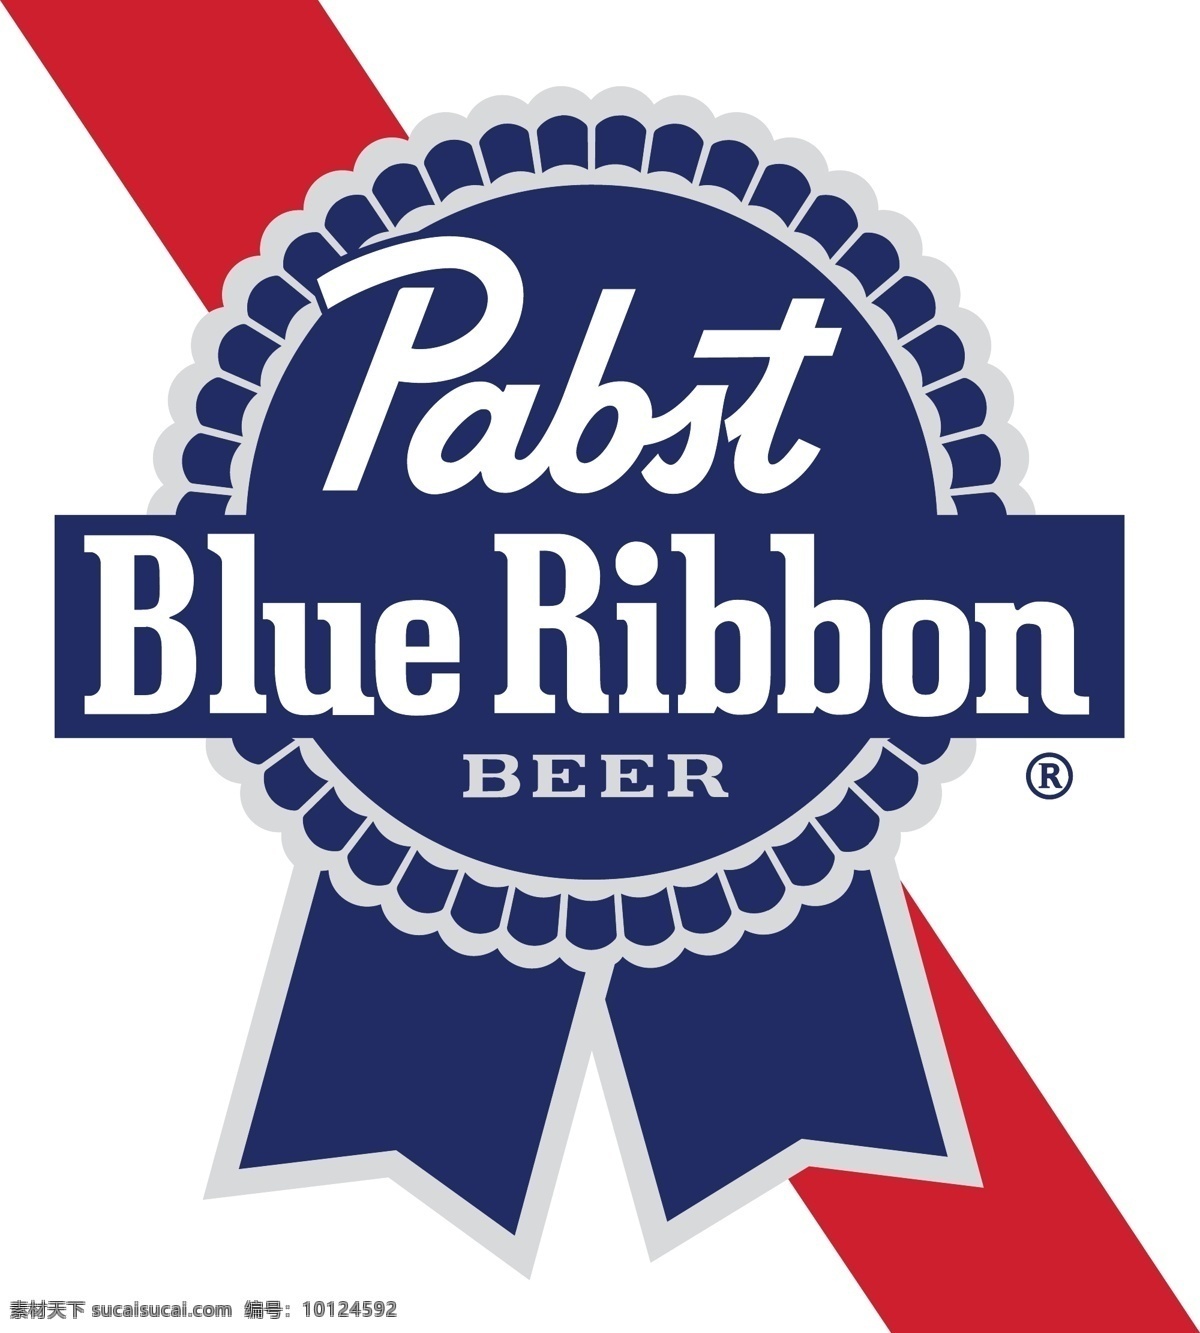 蓝带 啤酒 logo 标志 啤酒品牌 蓝带啤酒 pabst blue ribbon 啤酒logo logo设计